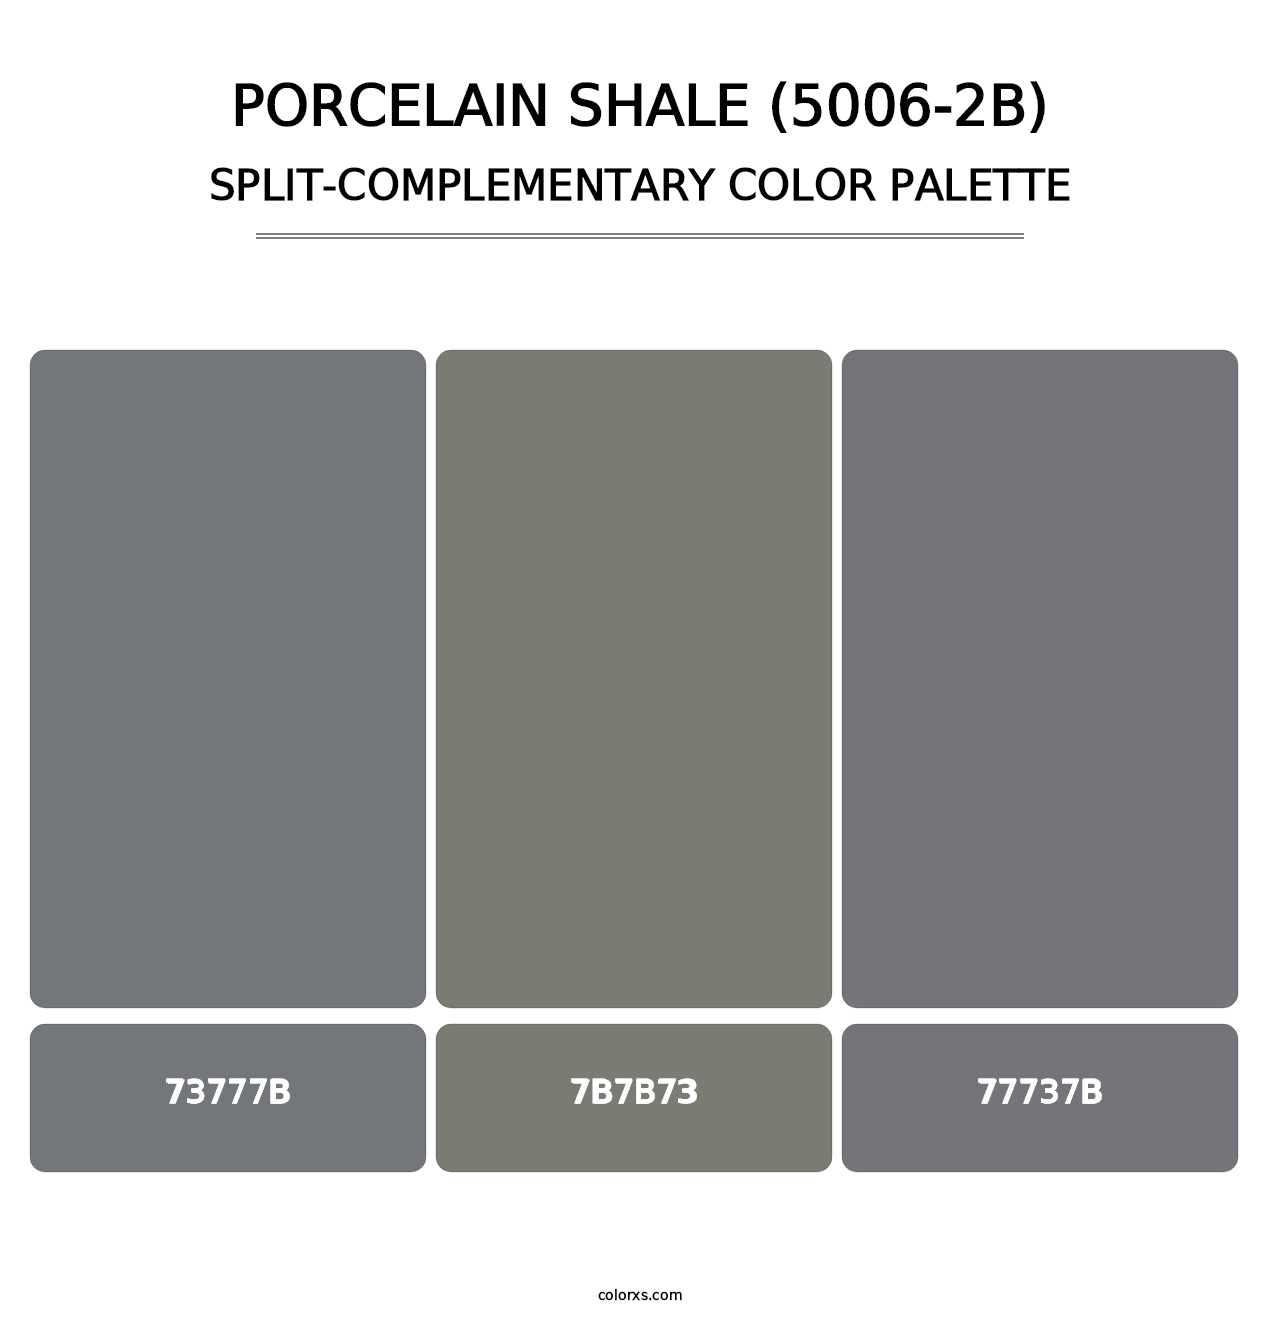 Porcelain Shale (5006-2B) - Split-Complementary Color Palette